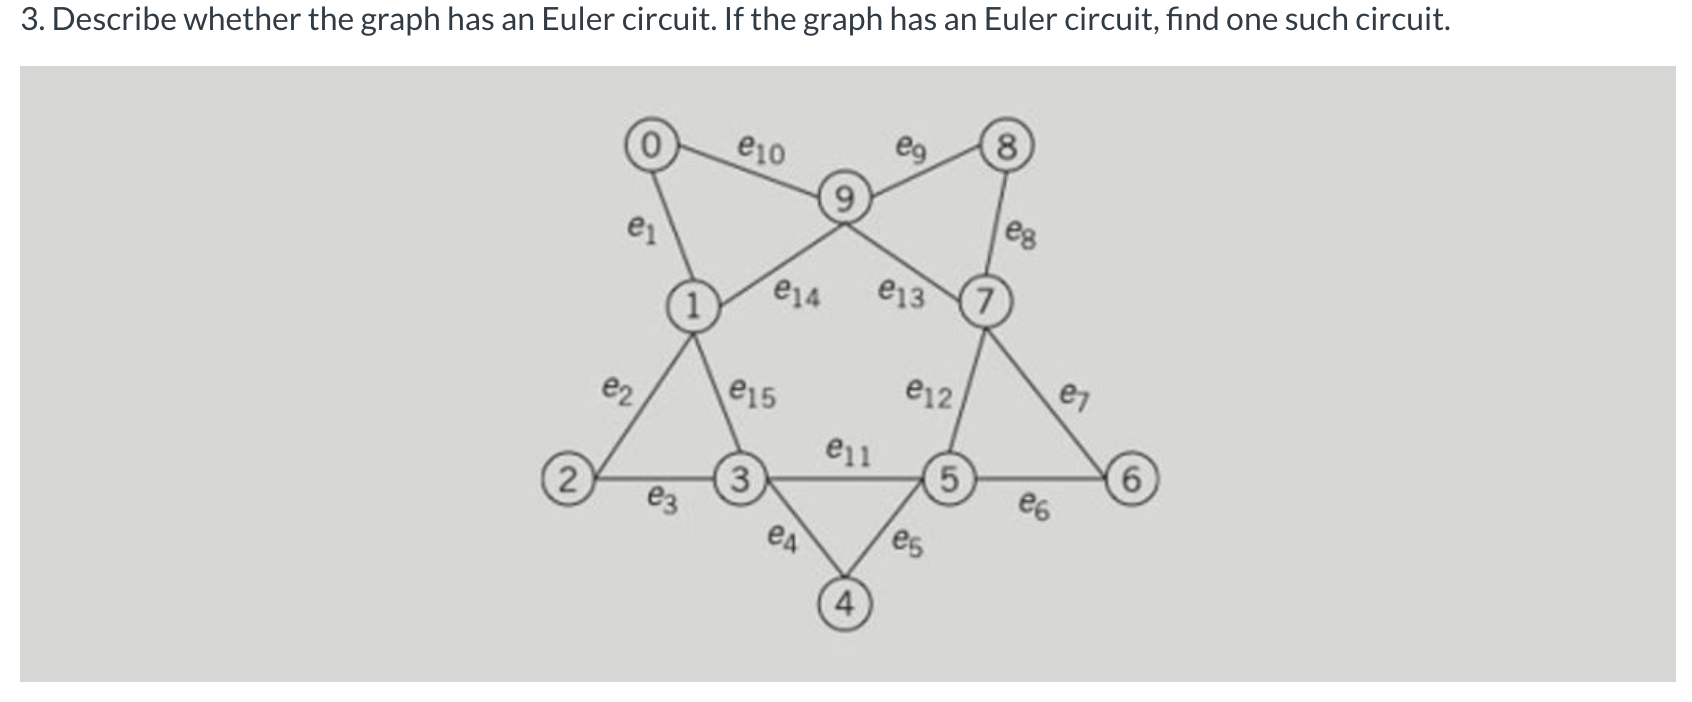 3. Describe whether the graph has an Euler circuit. If the graph has an Euler circuit, find one such circuit.
8
e10
es
e14
e13
e12
e7
eг
e15
9.
e6
e11
(2)
3
ез
ед
es
